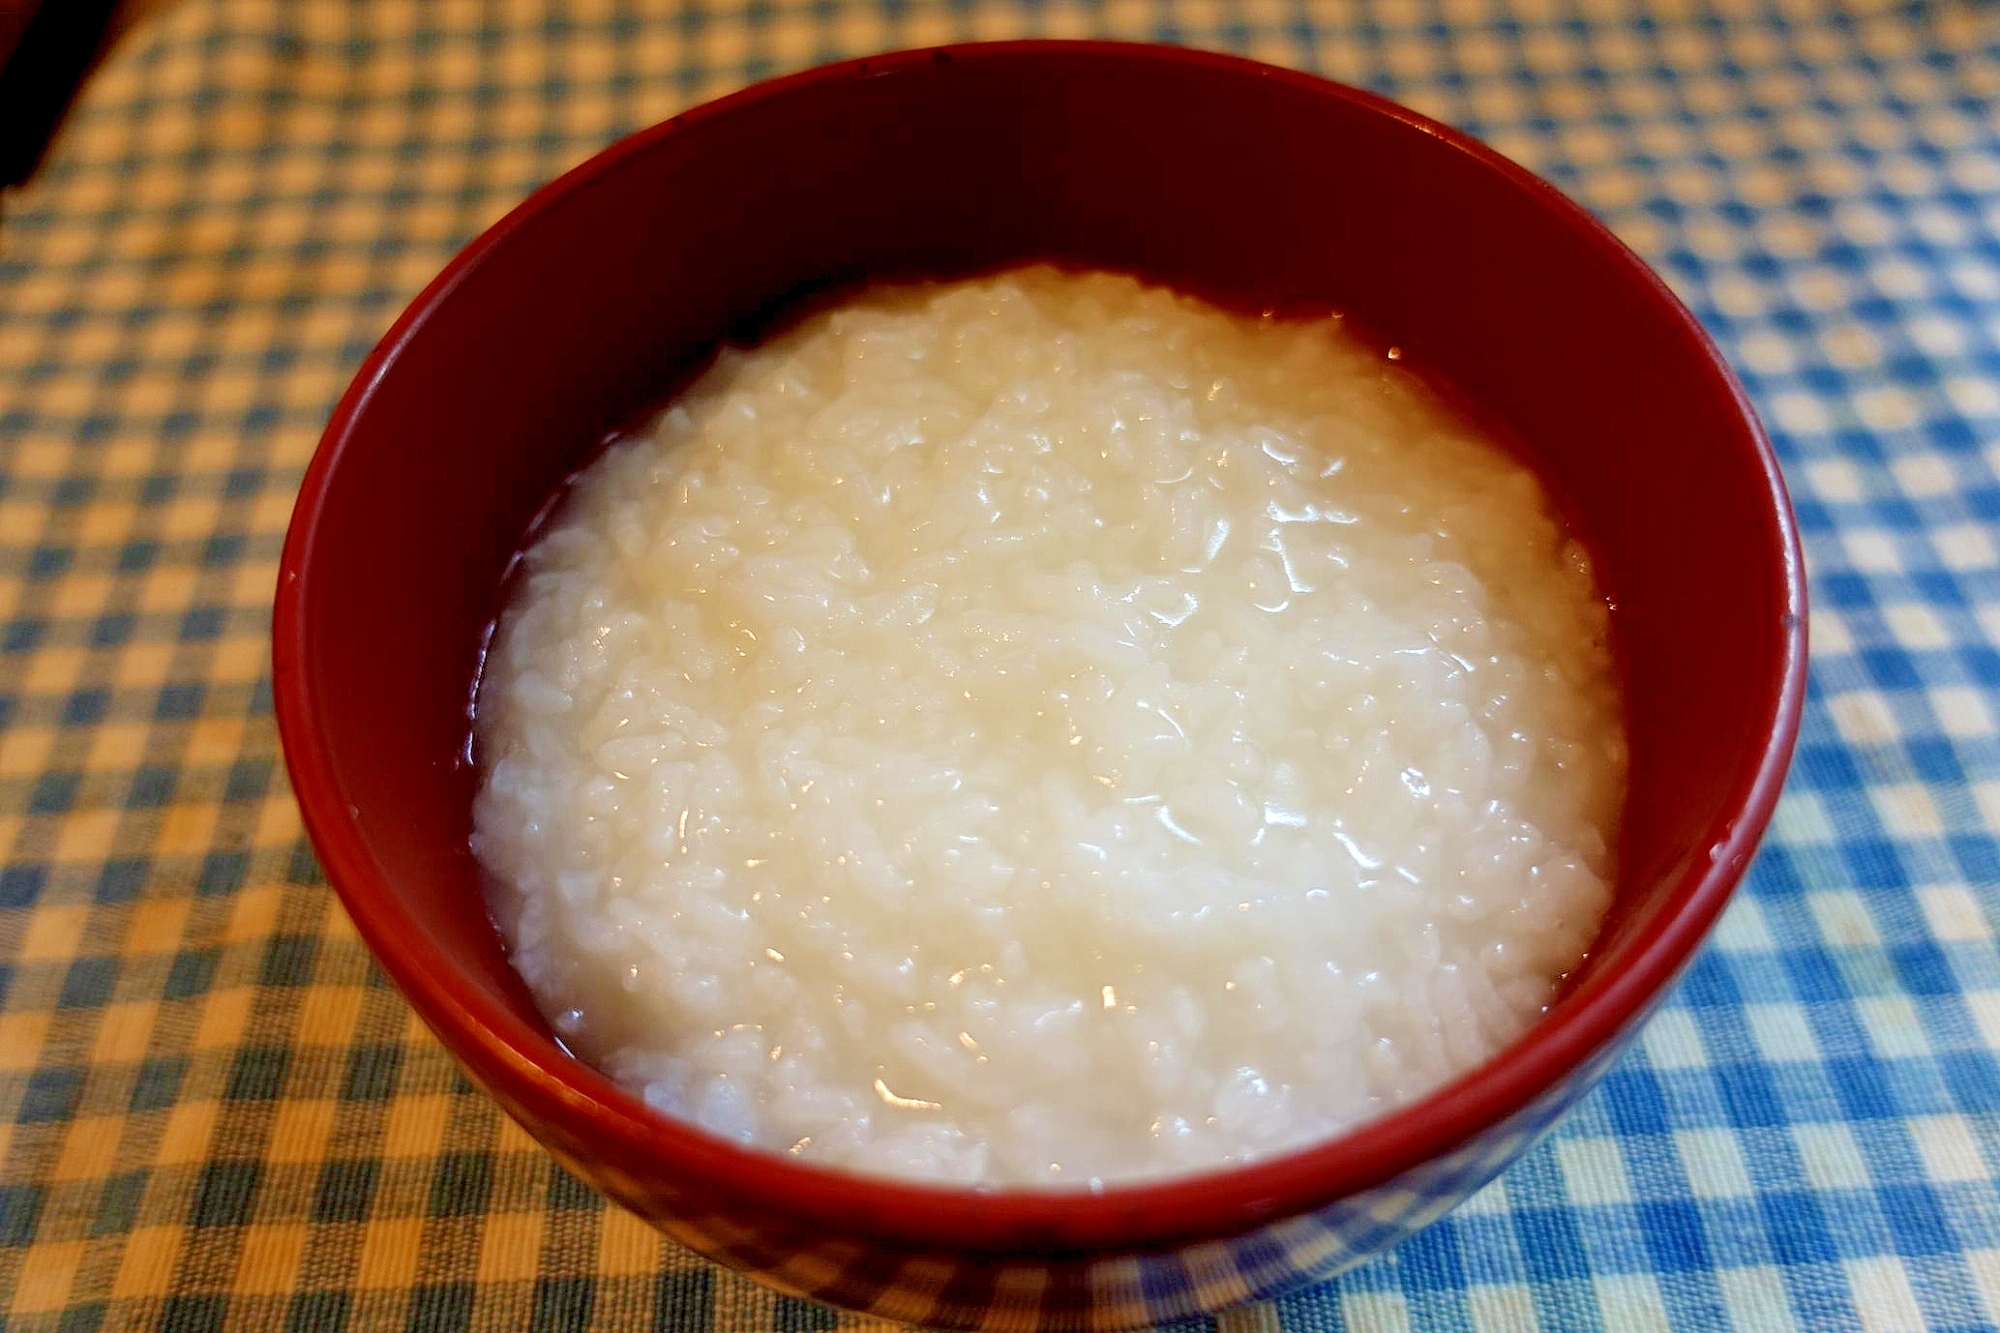 鍋で炊く生米からのおかゆ